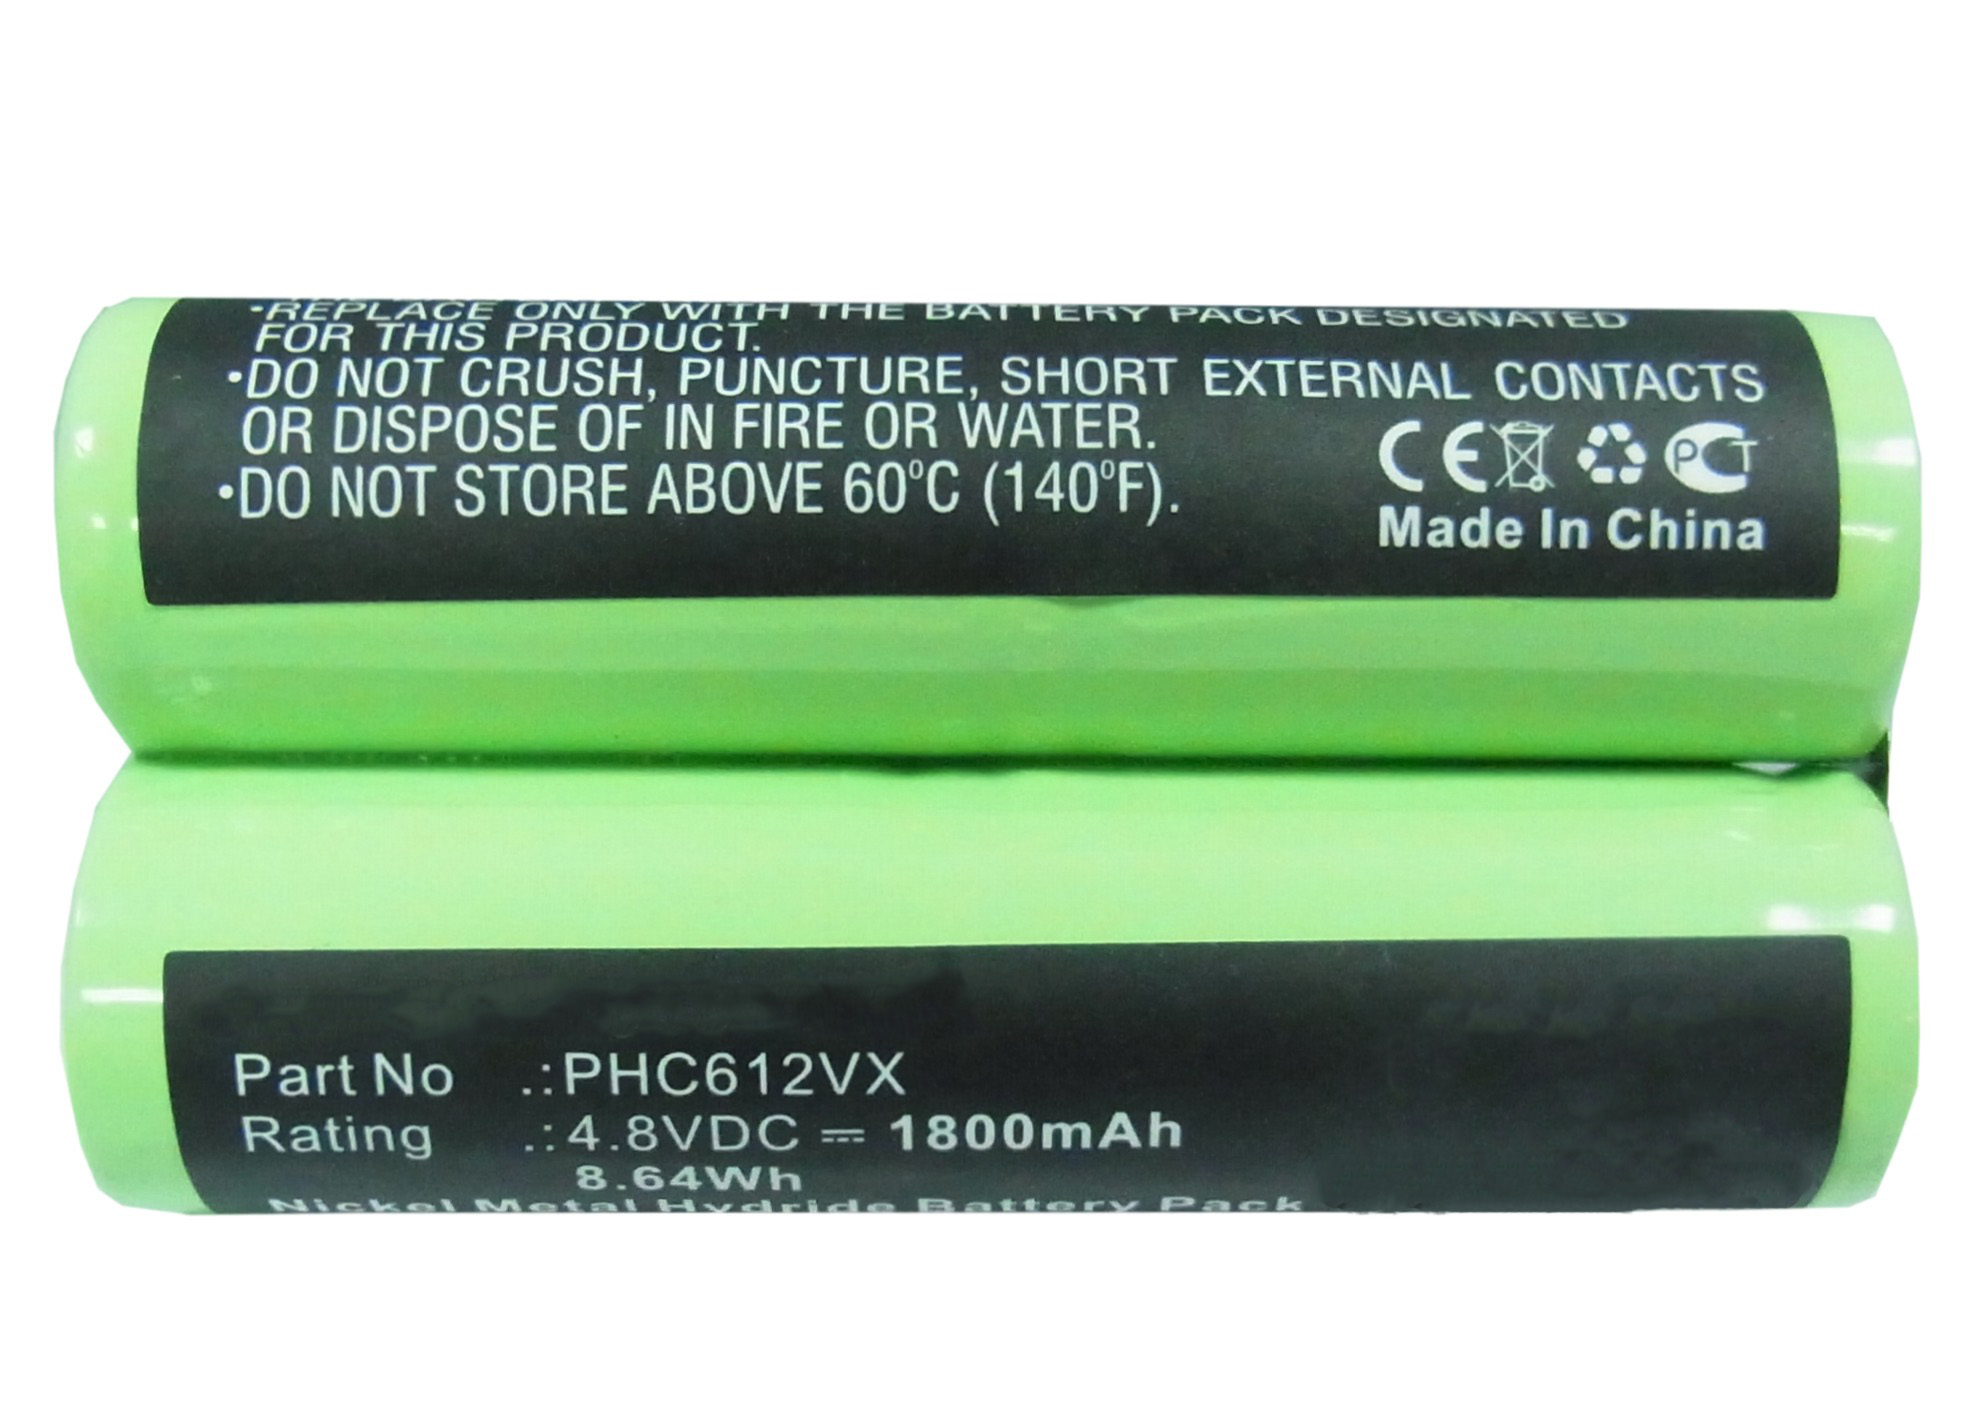 Batteries for PhilipsVacuum Cleaner